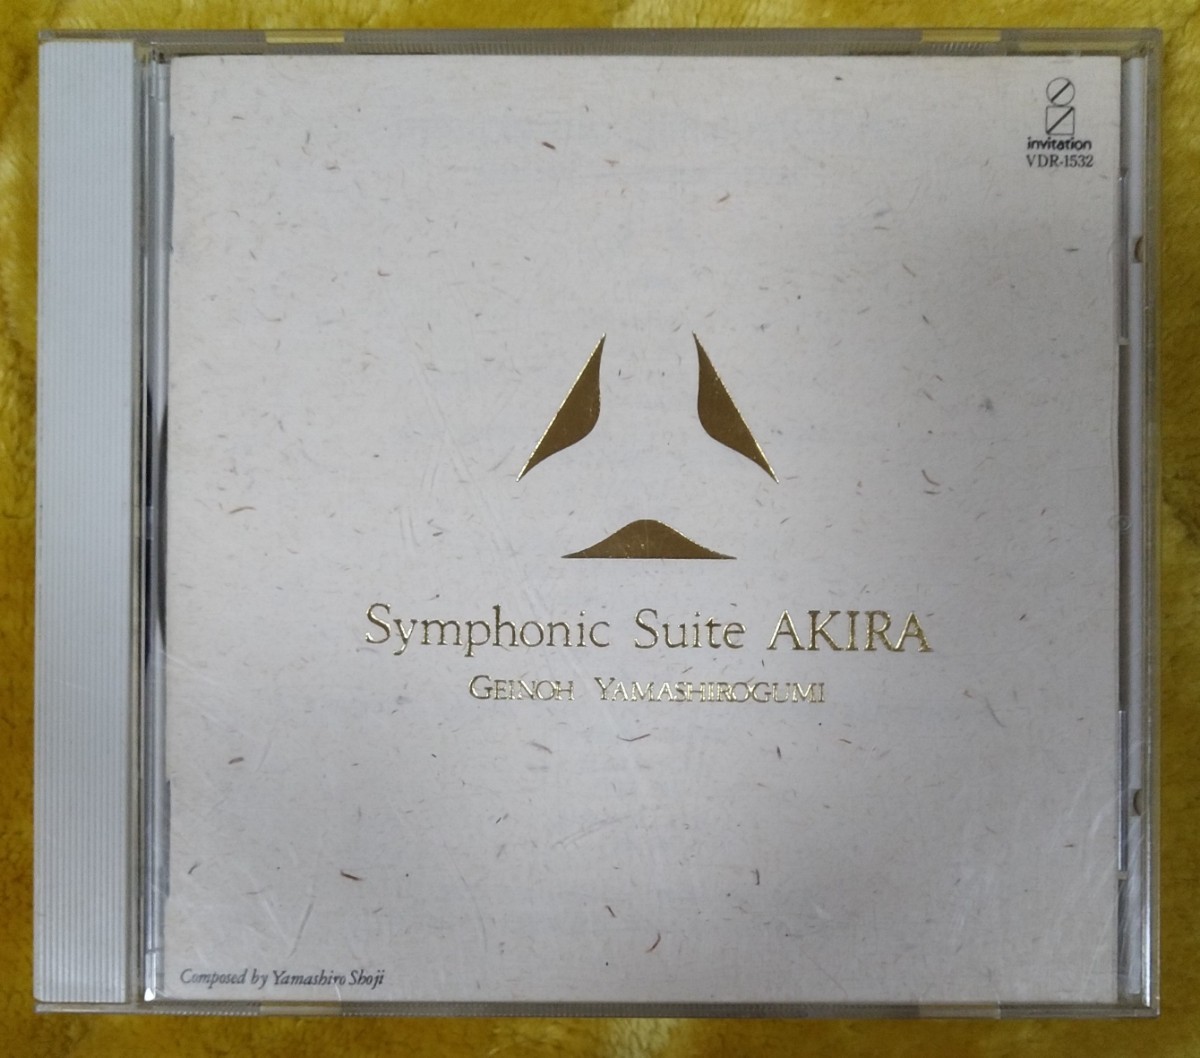 芸能山城組 Symphonic Suite AKIRA 廃盤国内盤中古CD geinoh yamashirogumi シンフォニック・スウィート アキラ 大友克洋 VDR-1532_画像1